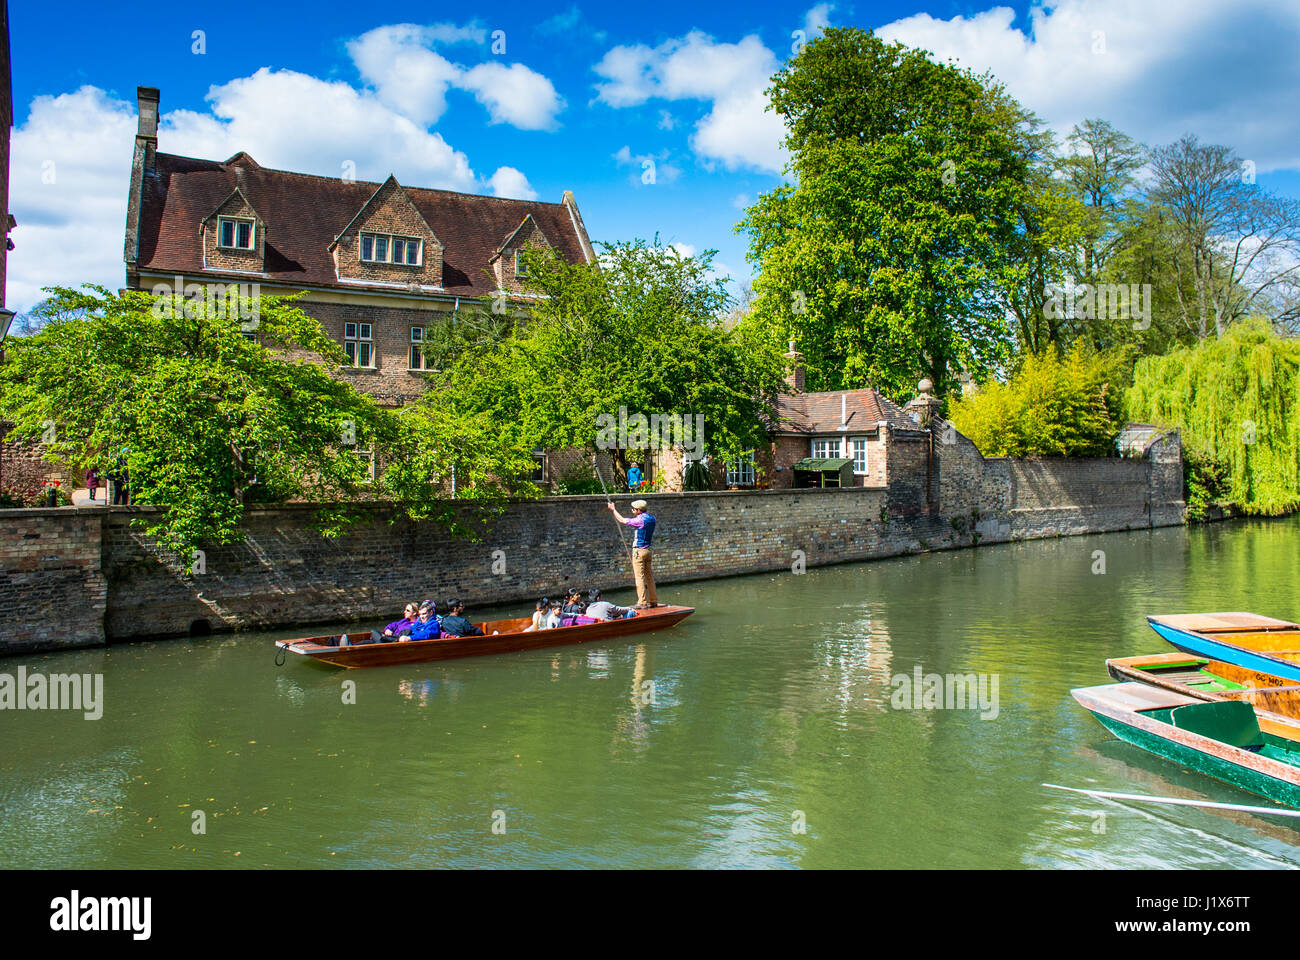 Promenades en barque sur une rivière en Angleterre Cambridge UK Banque D'Images